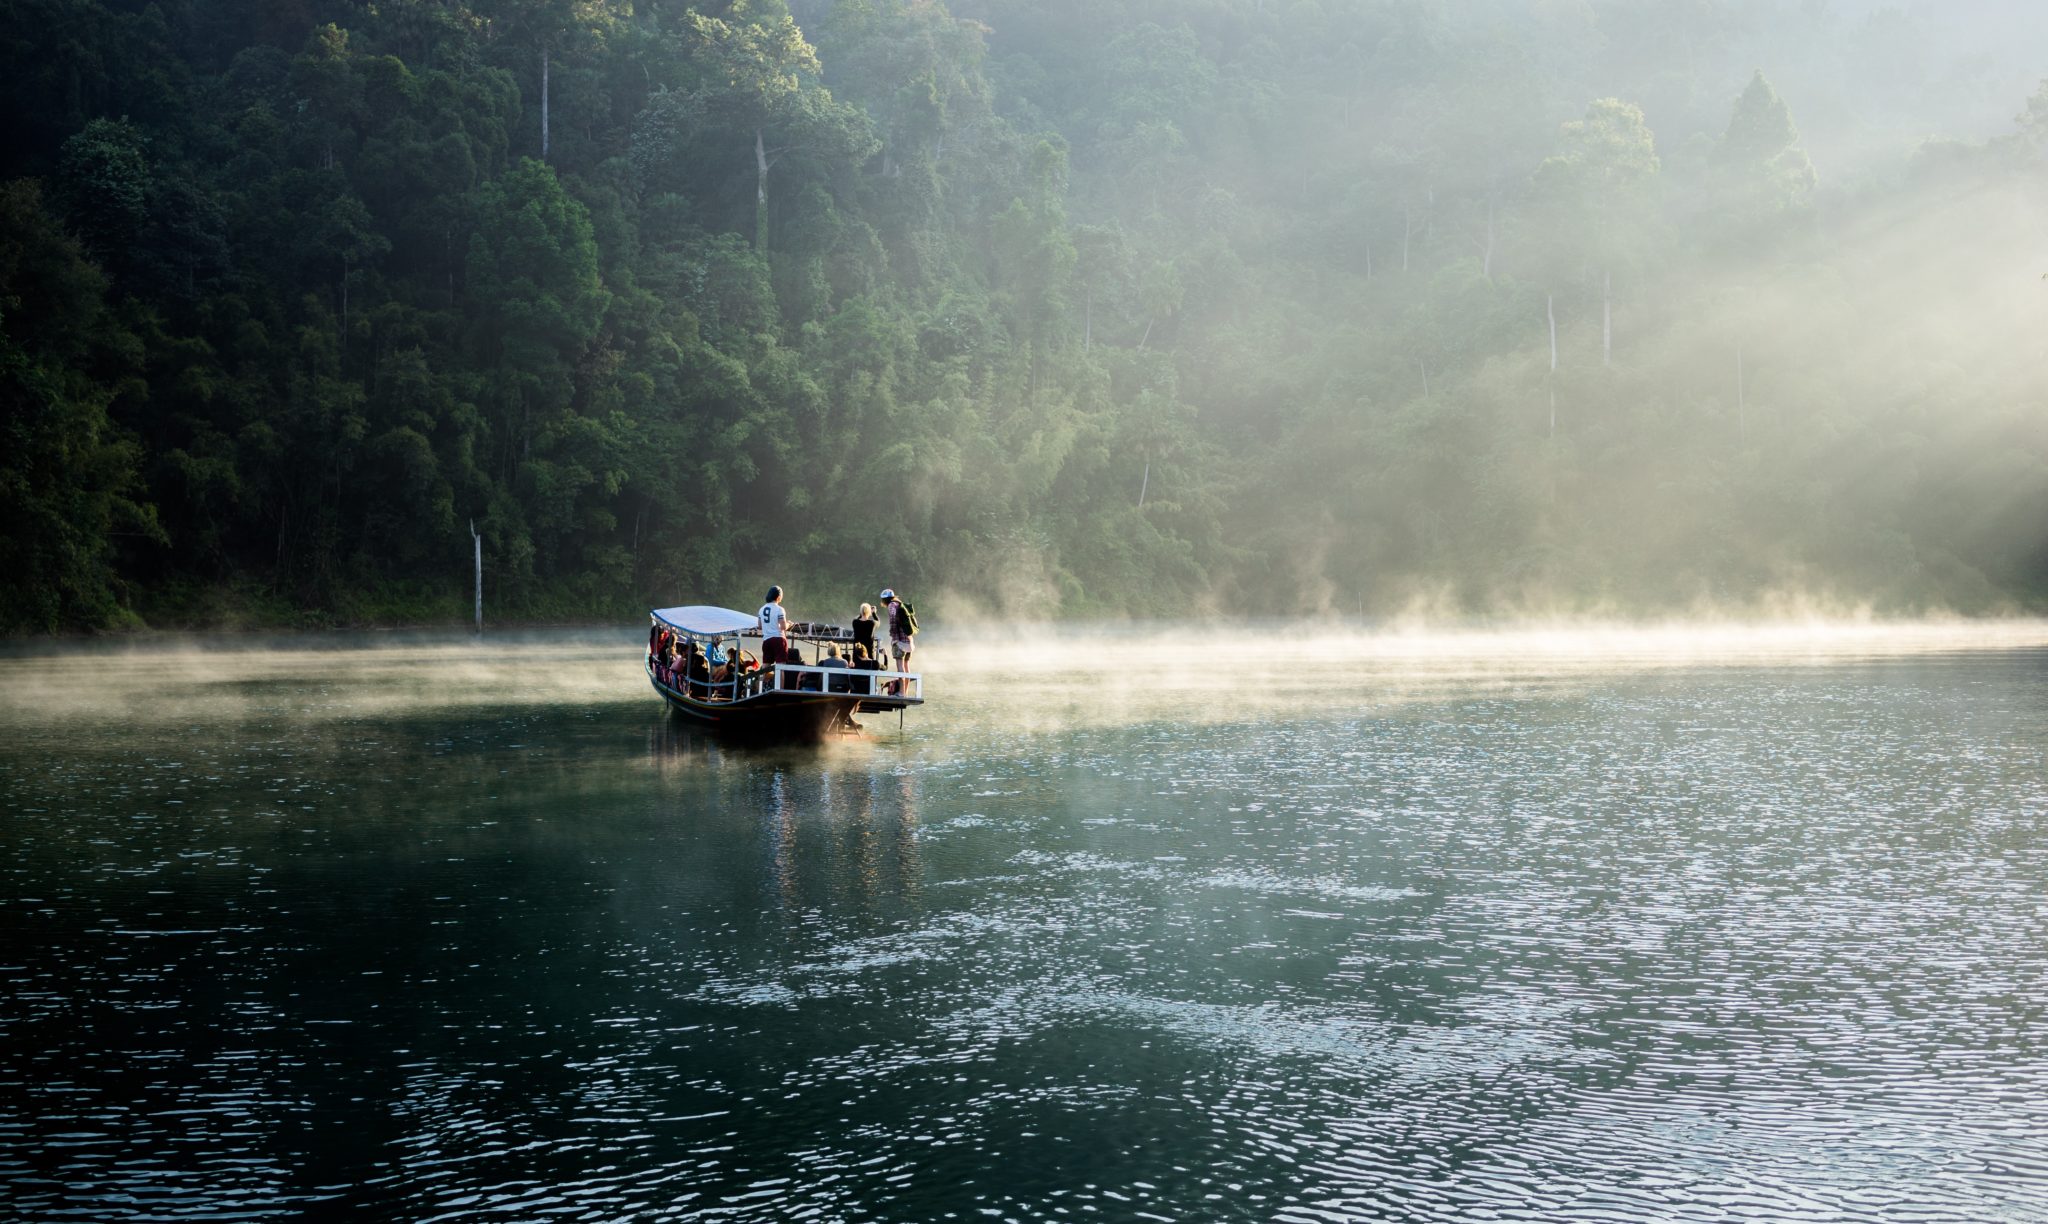 łódka na jeziorze, grupa ludzi na łódce, o wschodzie słońca, mgła, dżungla, ładne światło